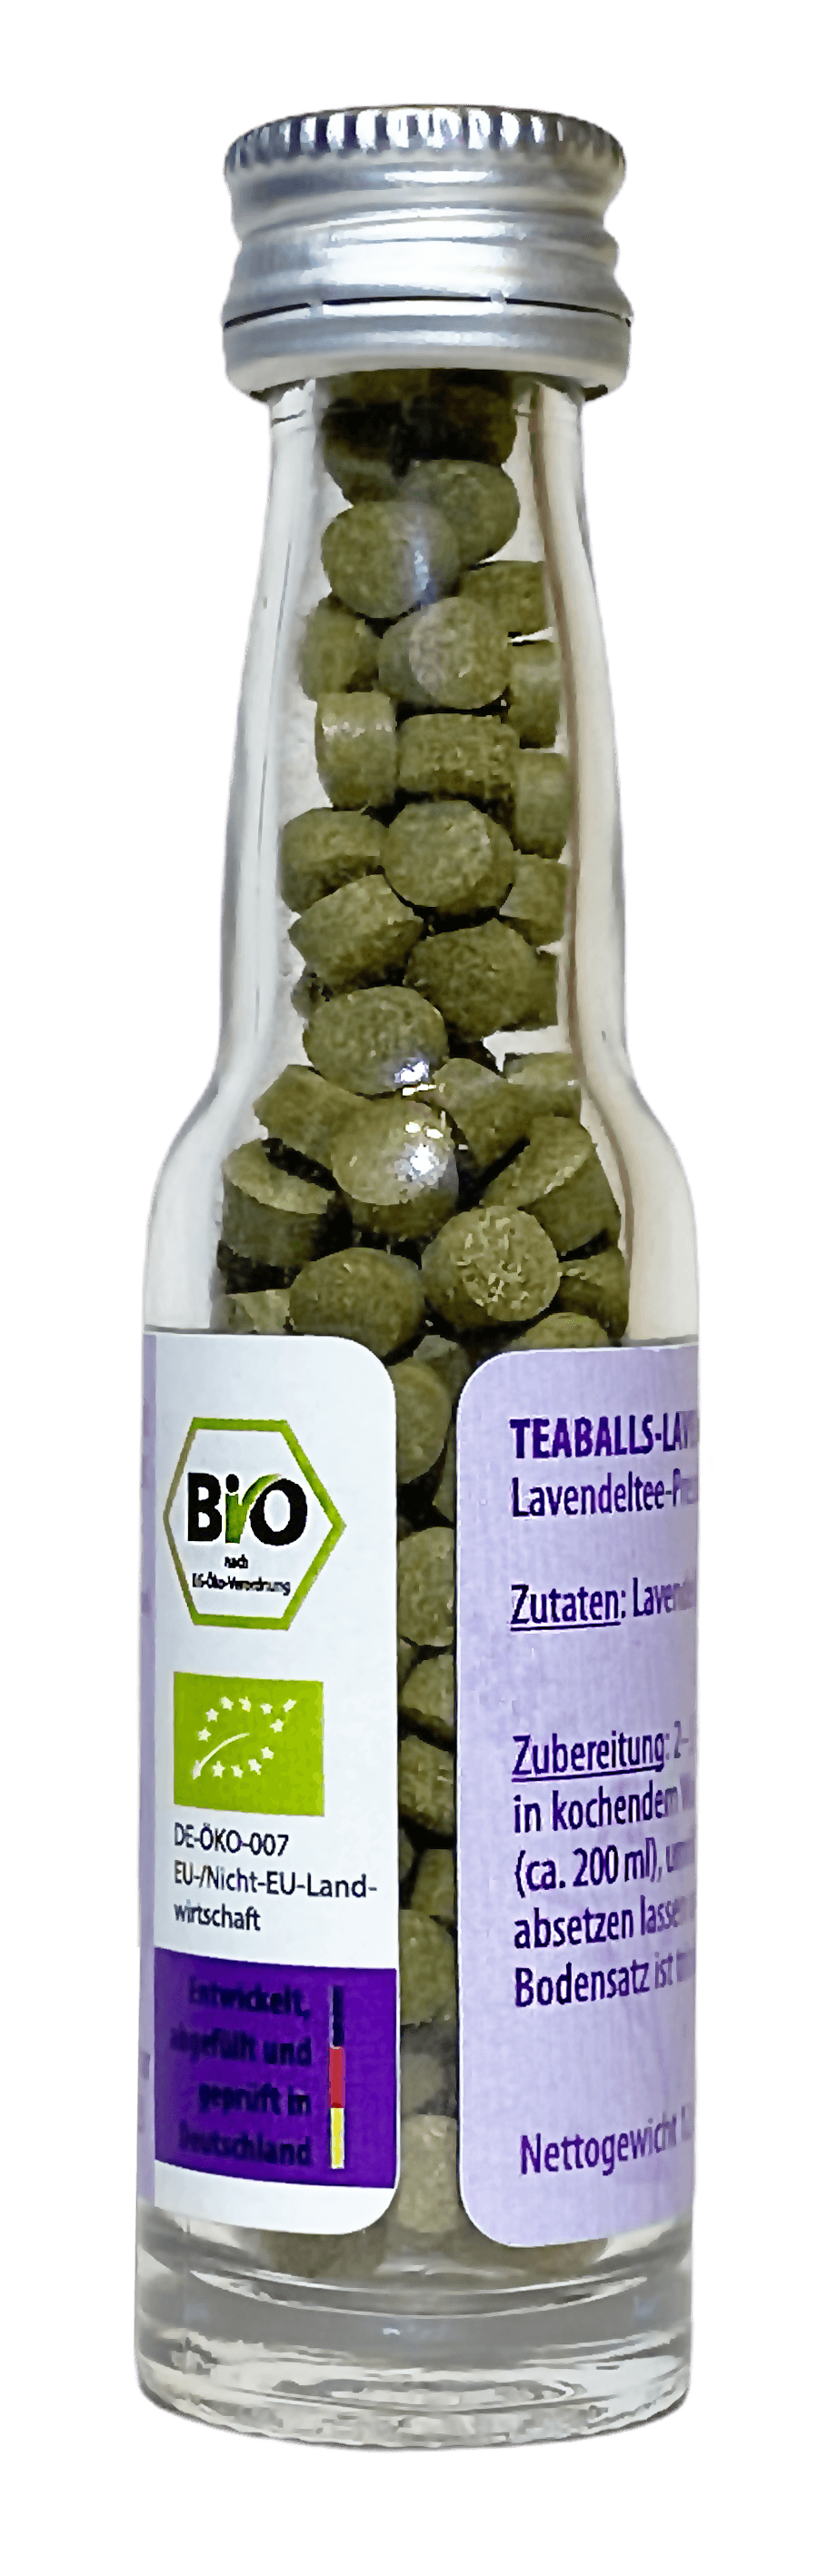 TEABALLS – Lavendel Bio | Naturtrüb | 30-75 Tassen - MYTEACOFFEE.COM | Tee und Kaffee Online bestellen | TEABALLS | BELMIO | DAMATH